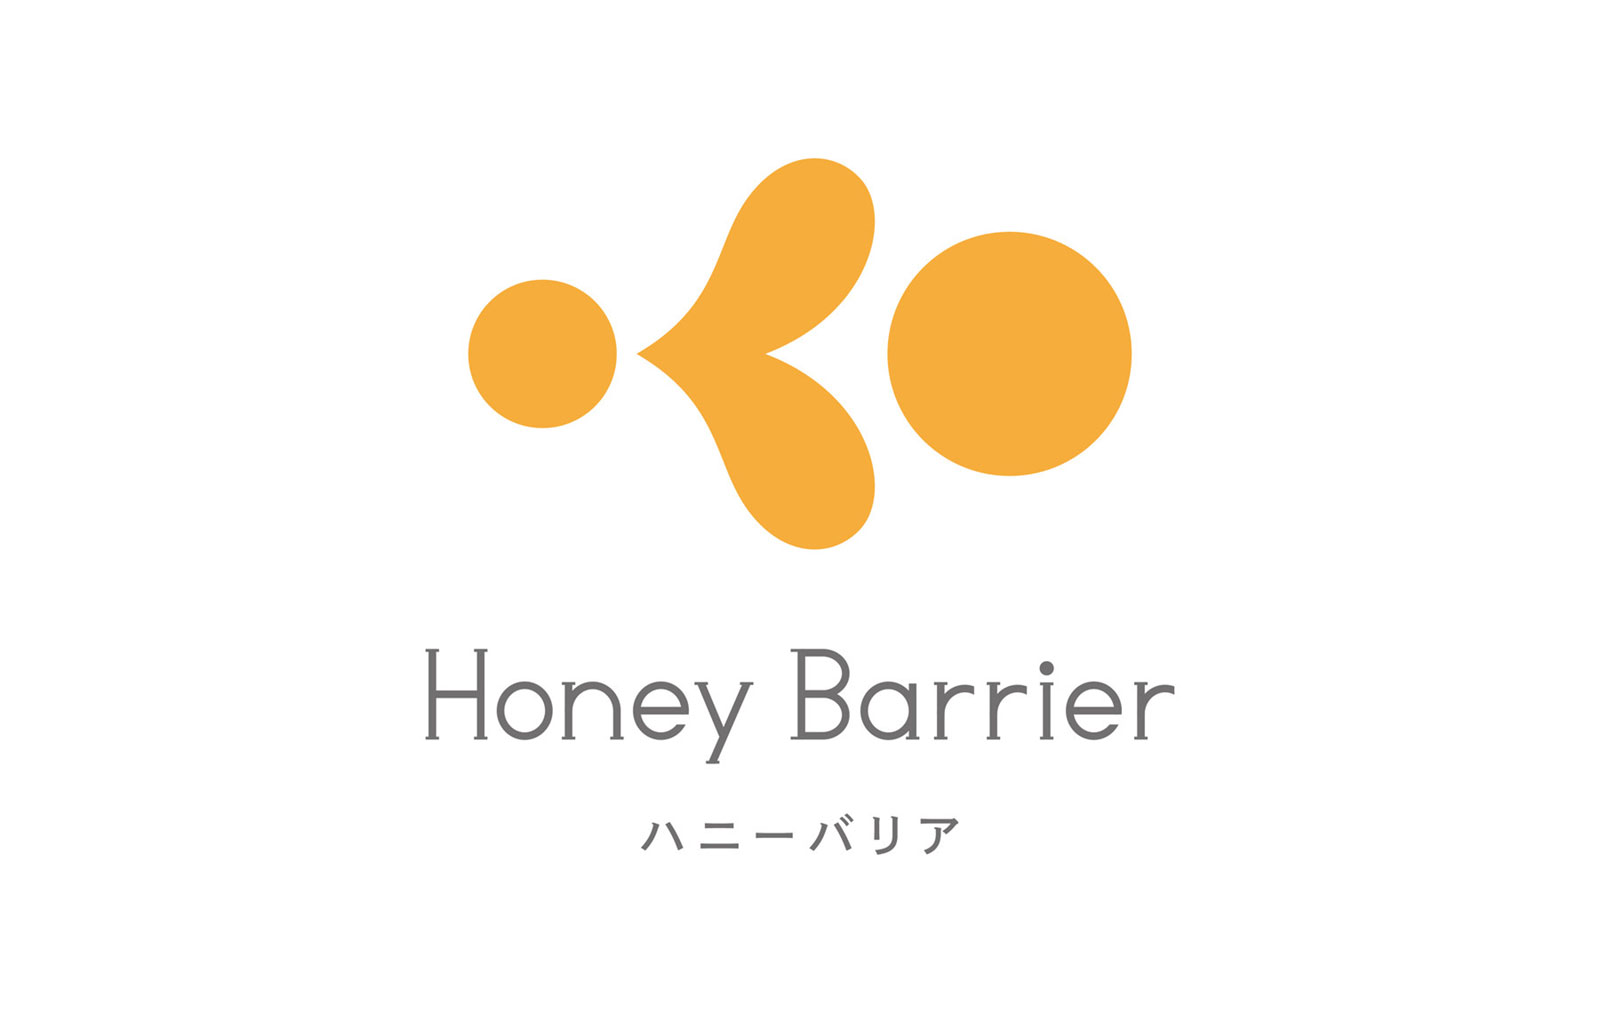 Honey Barrier